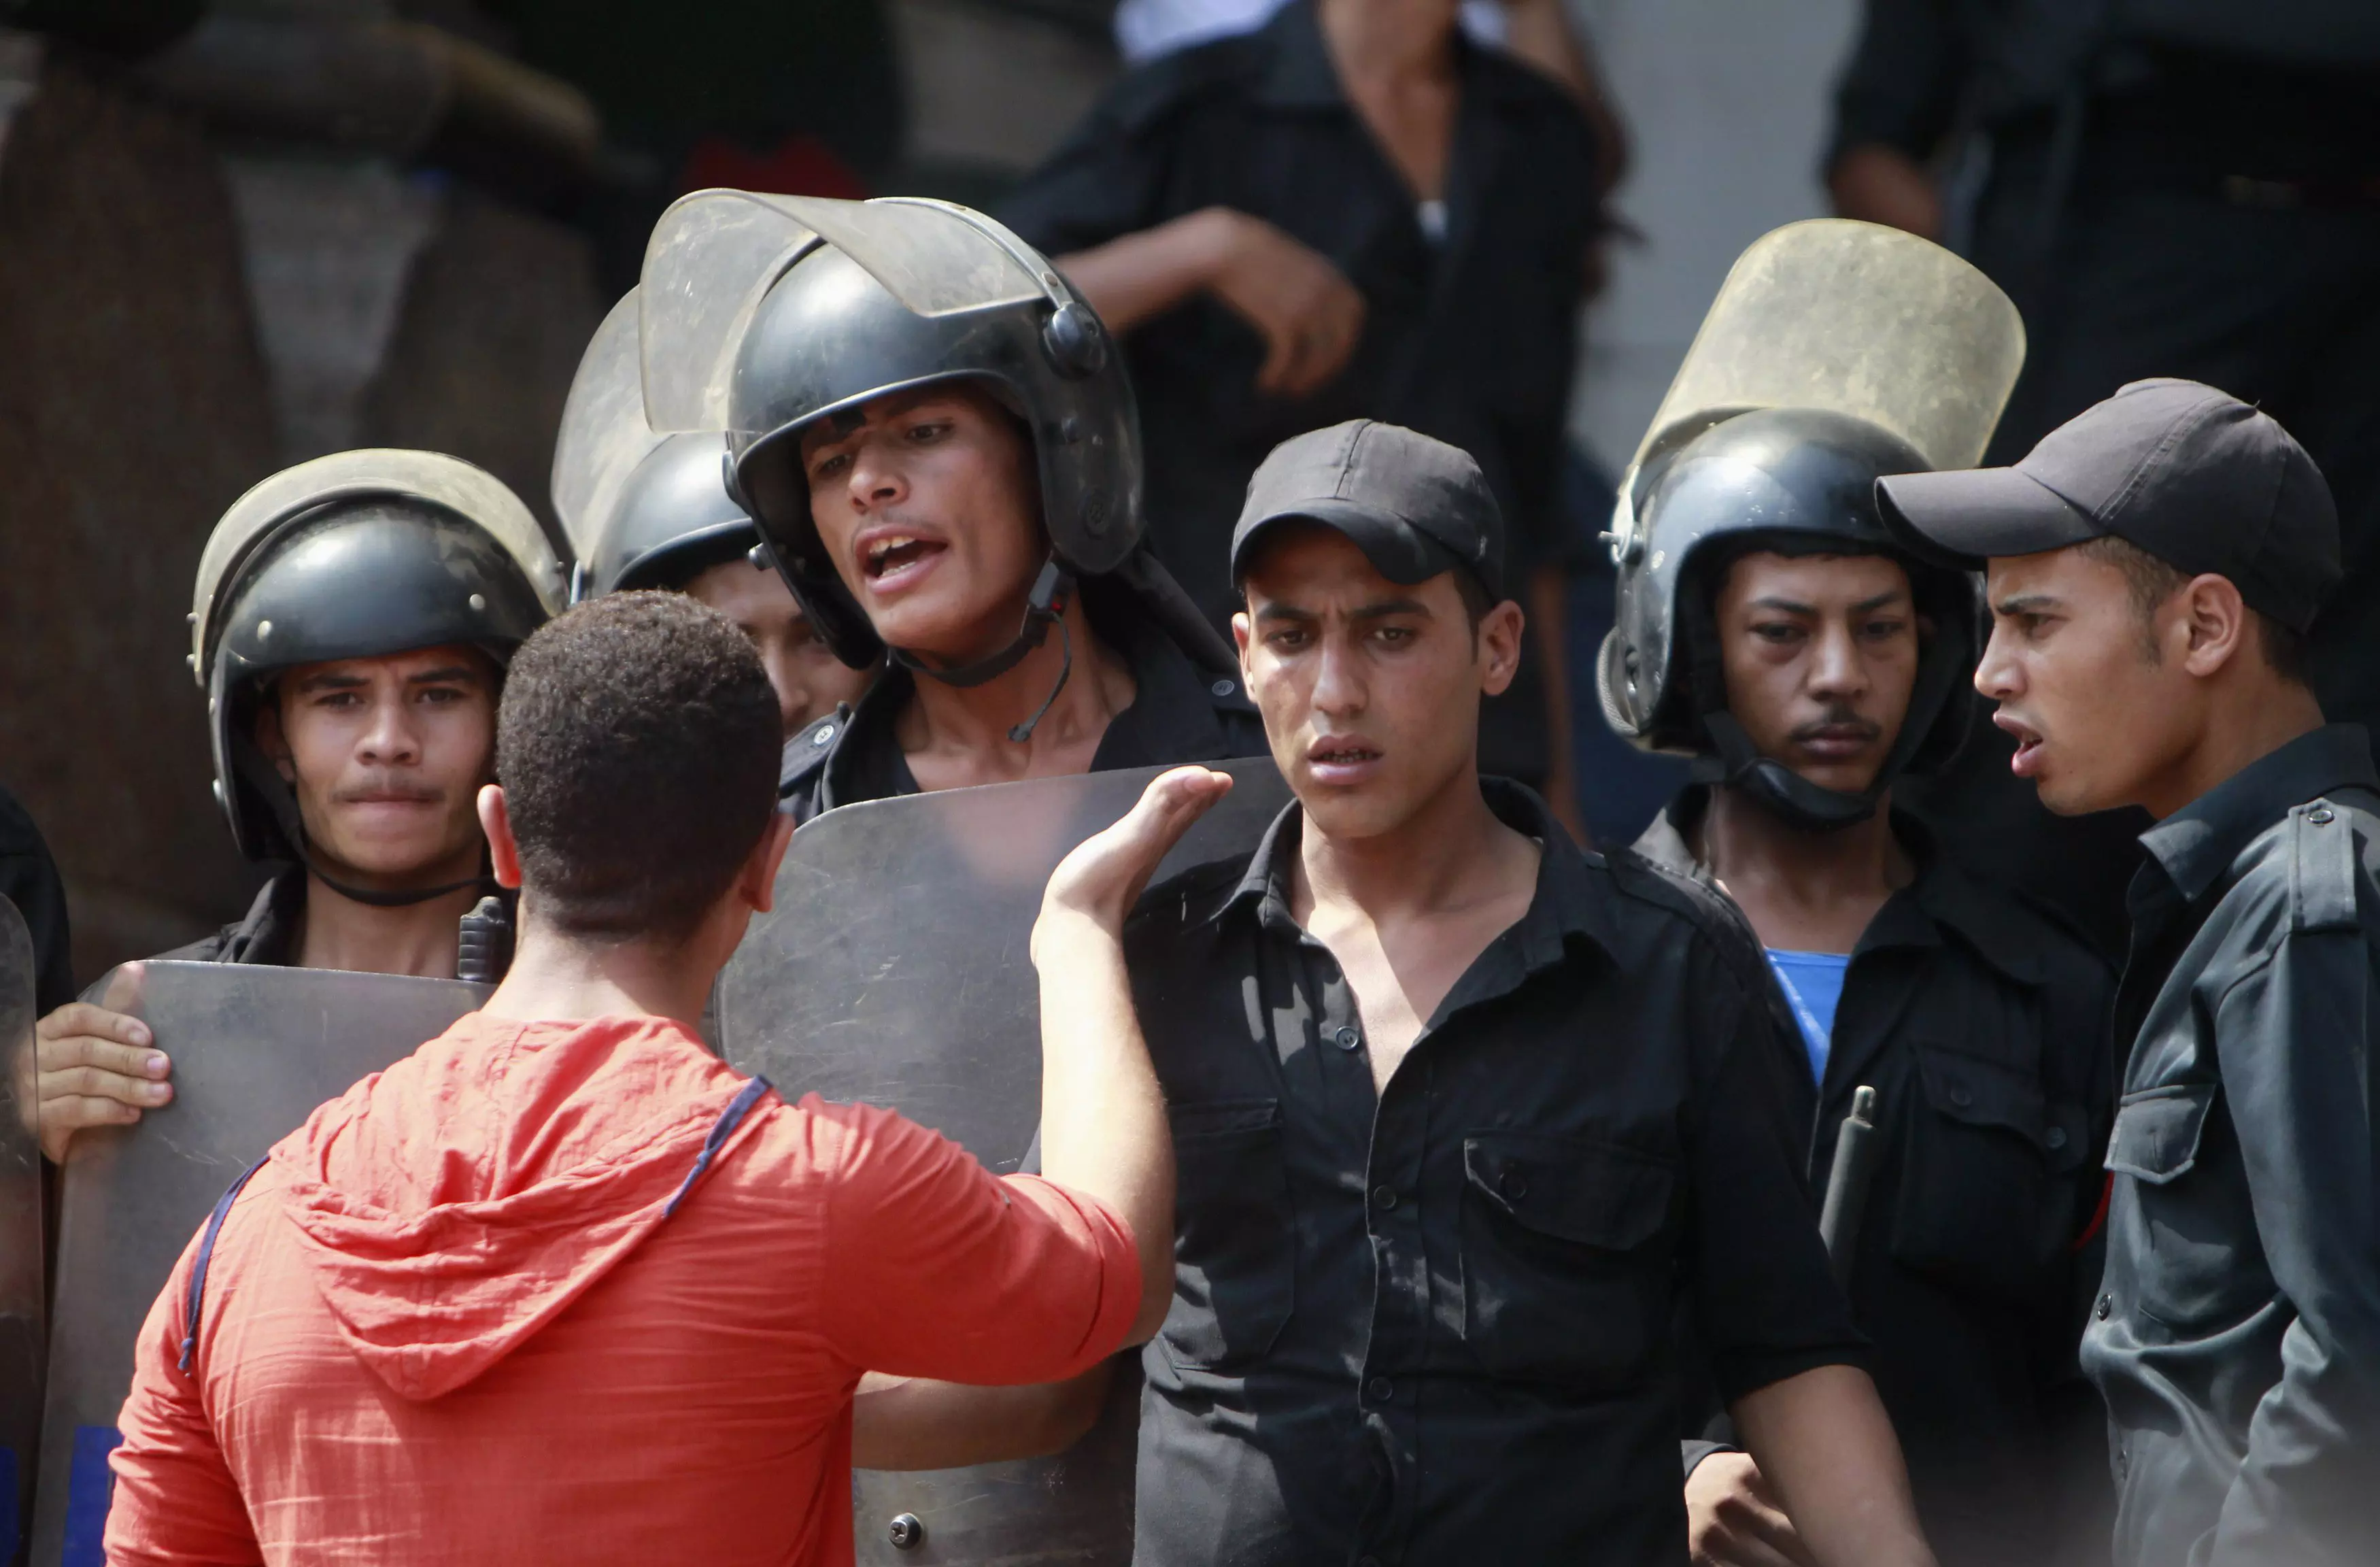 "גם במצרים המגמה התהפכה". עימותים בין מפגינים לכוחות הביטחון במצרים, החודש